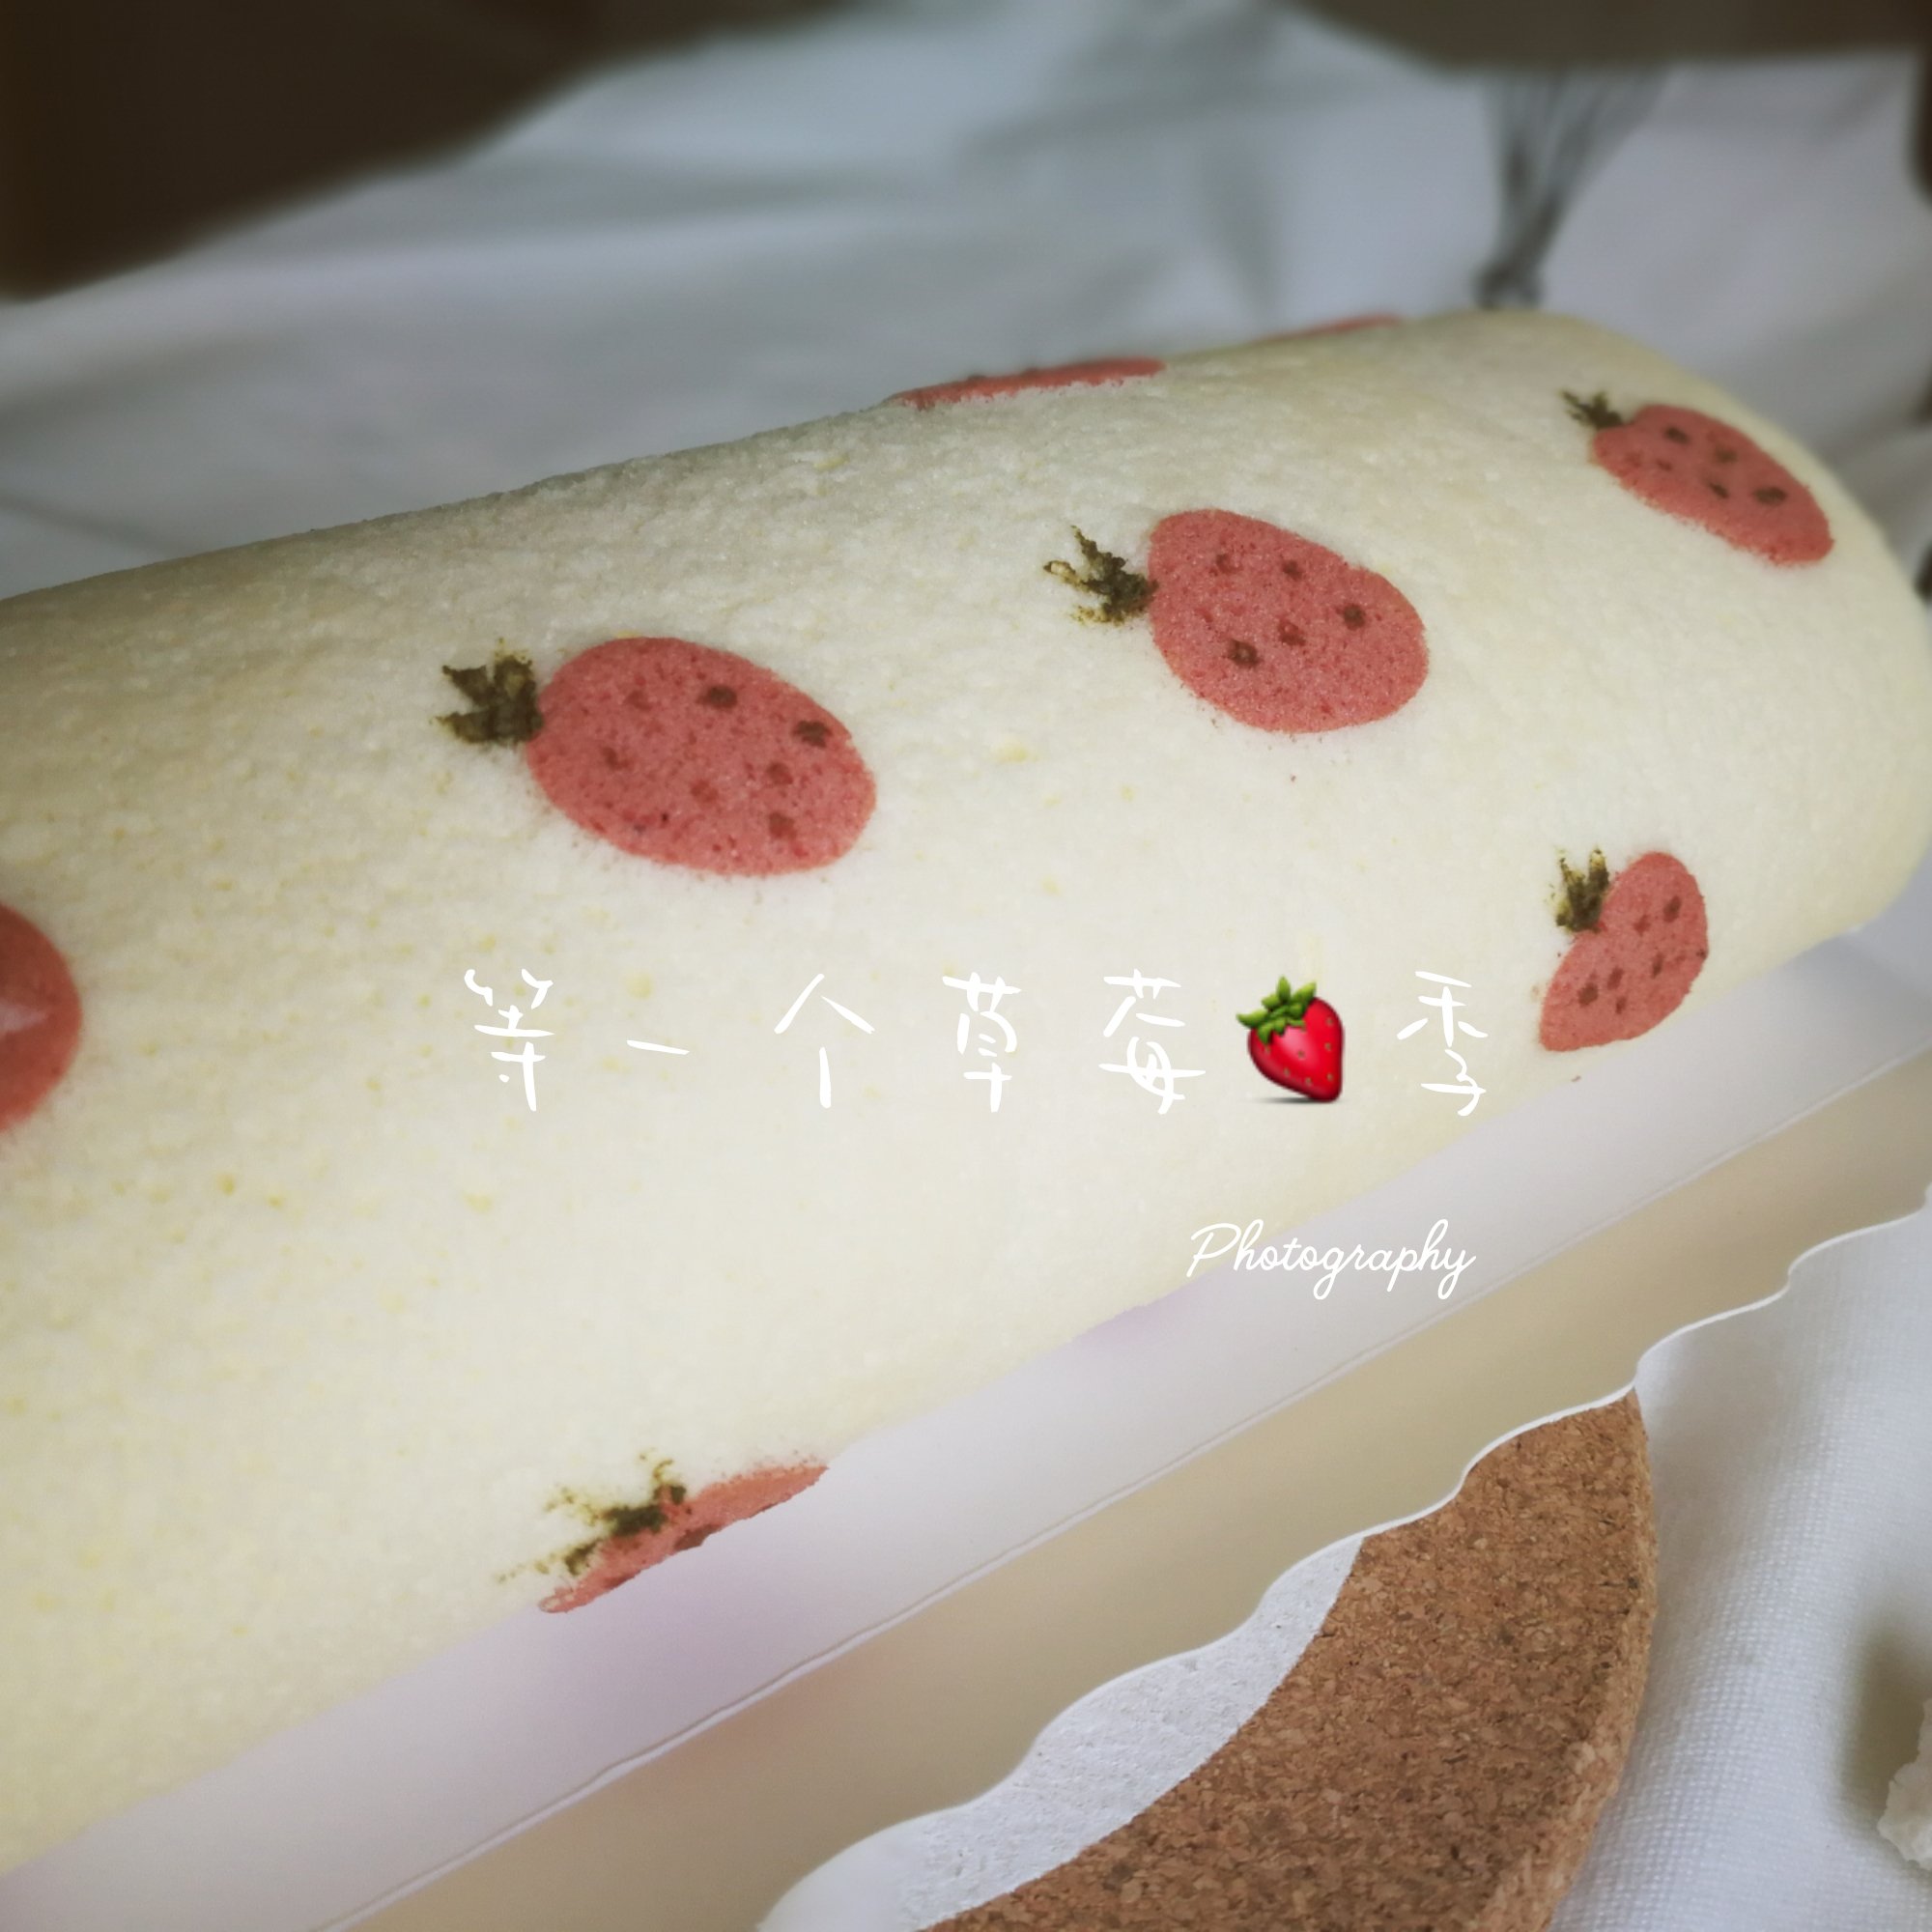 可爱草莓彩绘蛋糕卷🍓